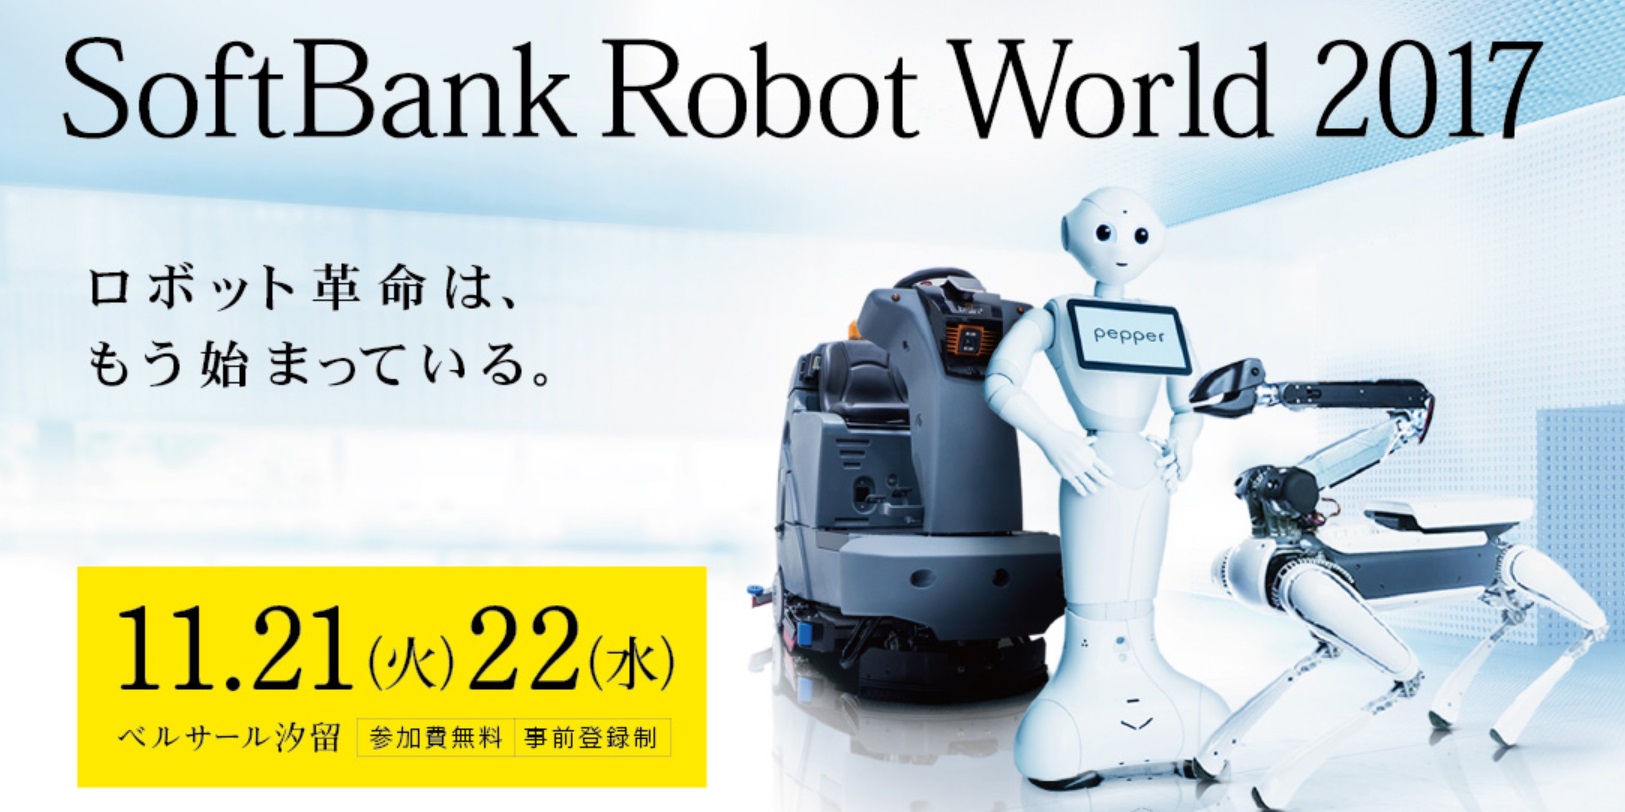 소프트뱅크 로봇 월드 2017 행사가 21일부터 22일까지 도쿄에서 열린다. <출처=소프트뱅크 로봇 월드 홈페이지>